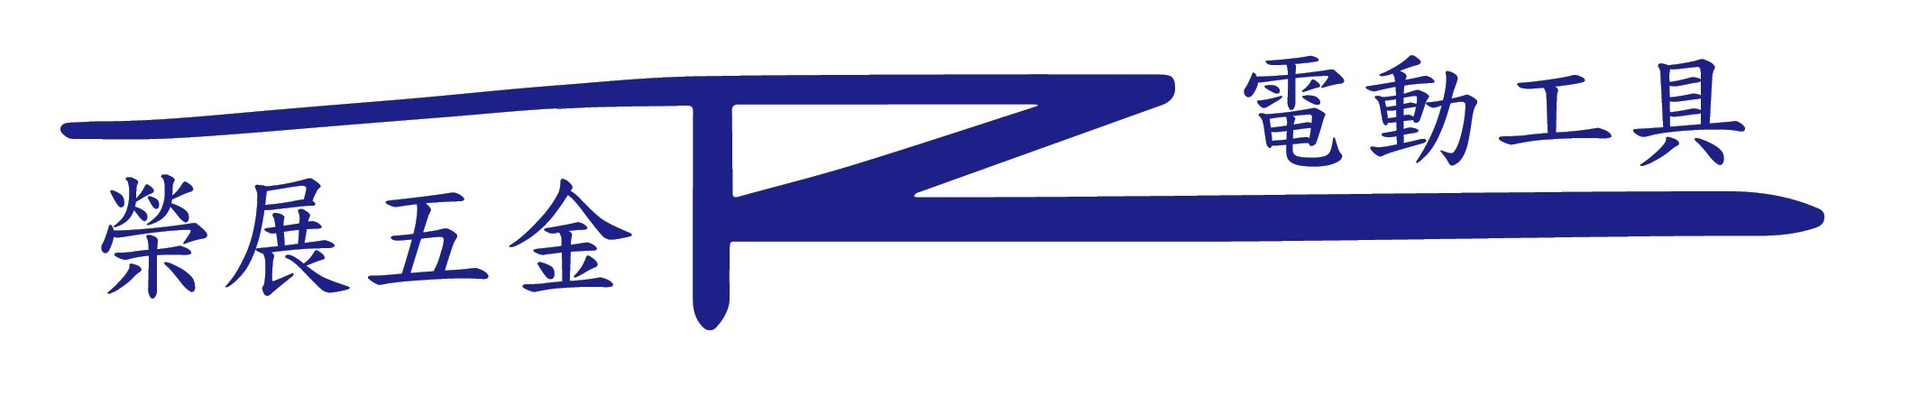 Rz榮展五金Logo